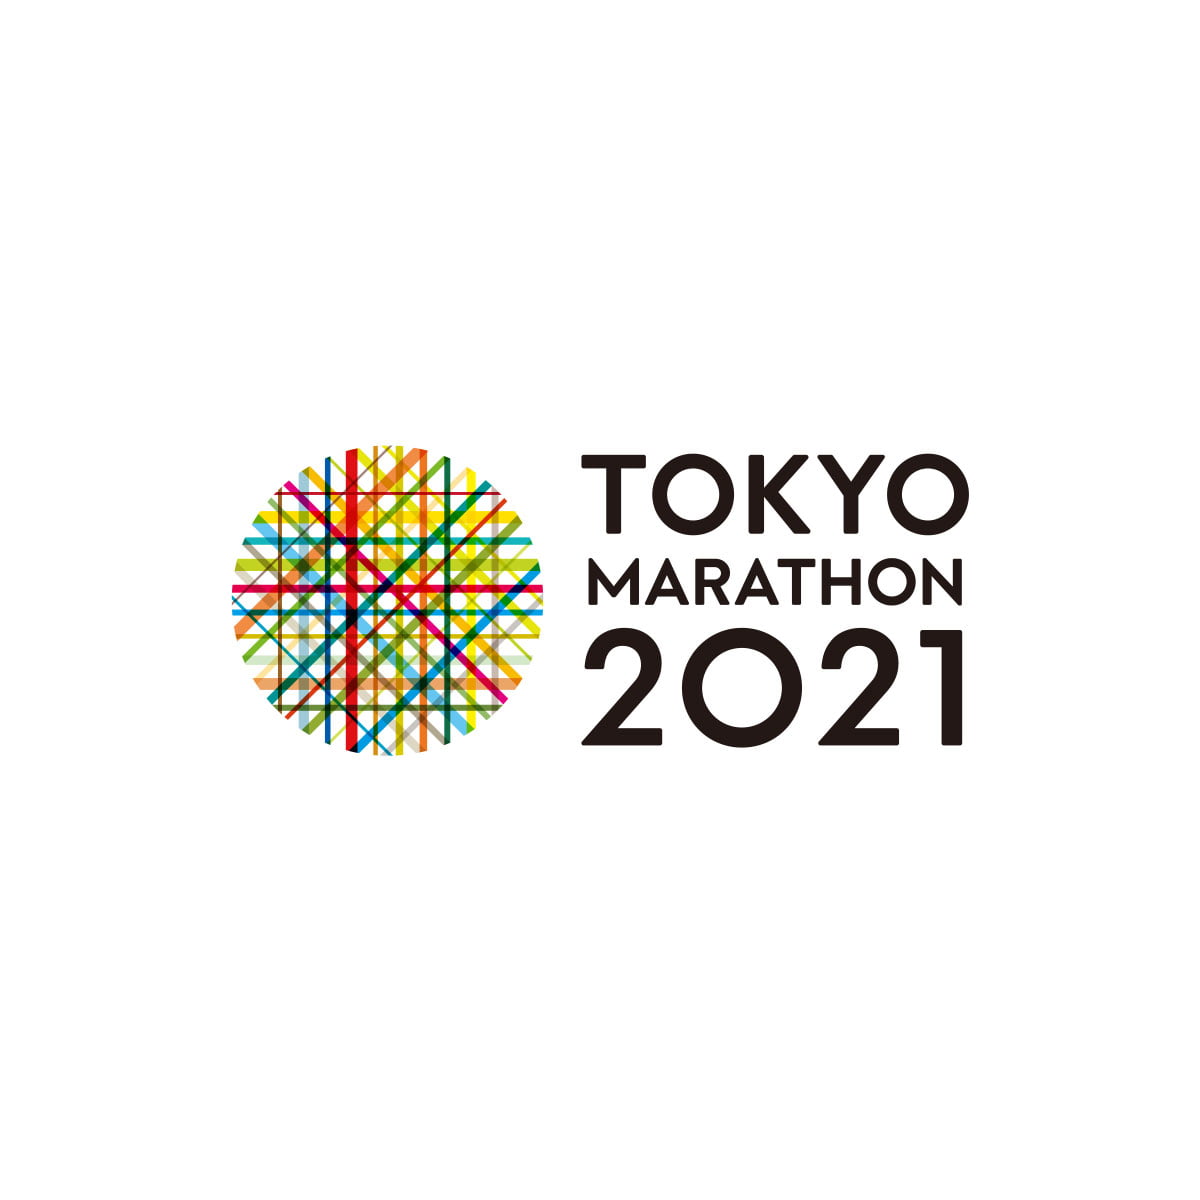 Tokyo marathon postponed till March 2022